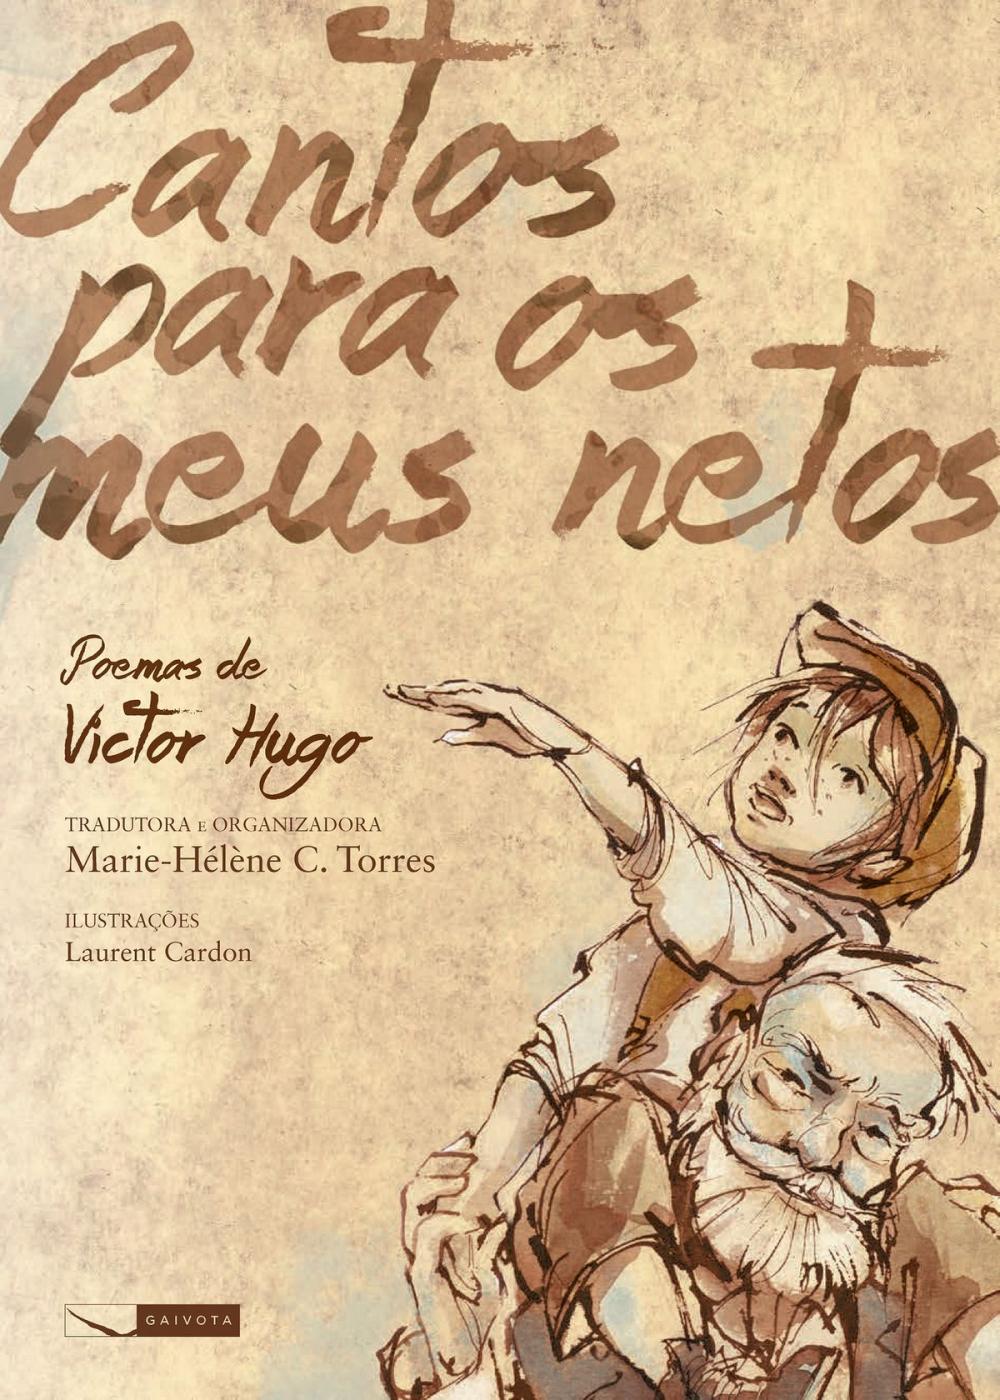 Big bigCover of Cantos para meus netos - poemas de Victor Hugo